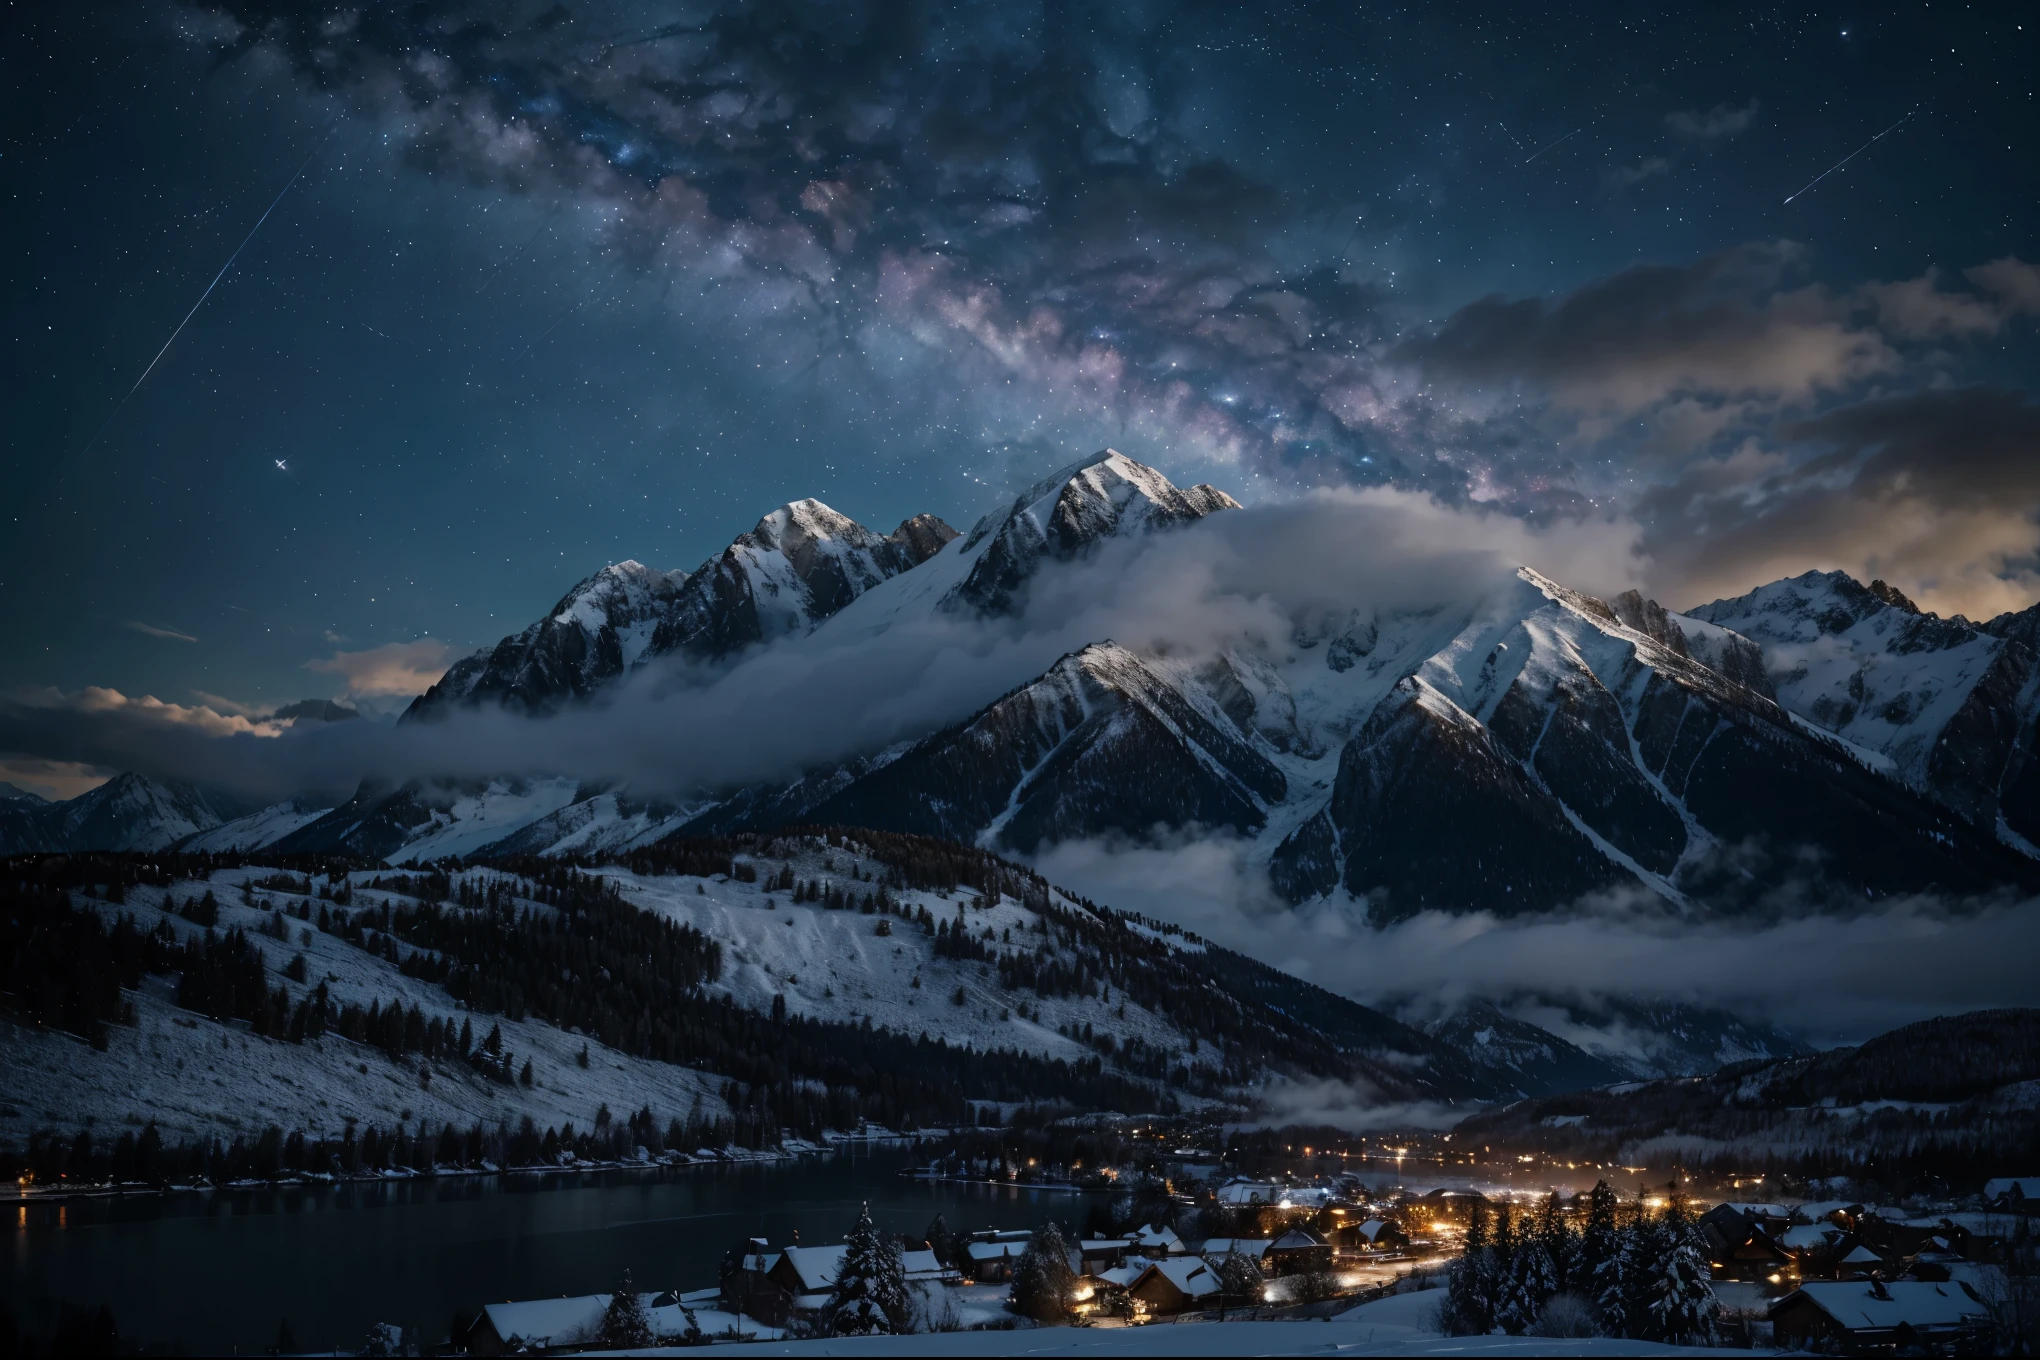 fondo, muchas montañas altas, muchas nubes, cielo de invierno, viendo constelaciones, galaxia, vía Láctea, hermosa noche de invierno con fondo de pantalla de una pequeña ciudad, hermoso lago, Detalles altos, Realista 8k Full HD.
